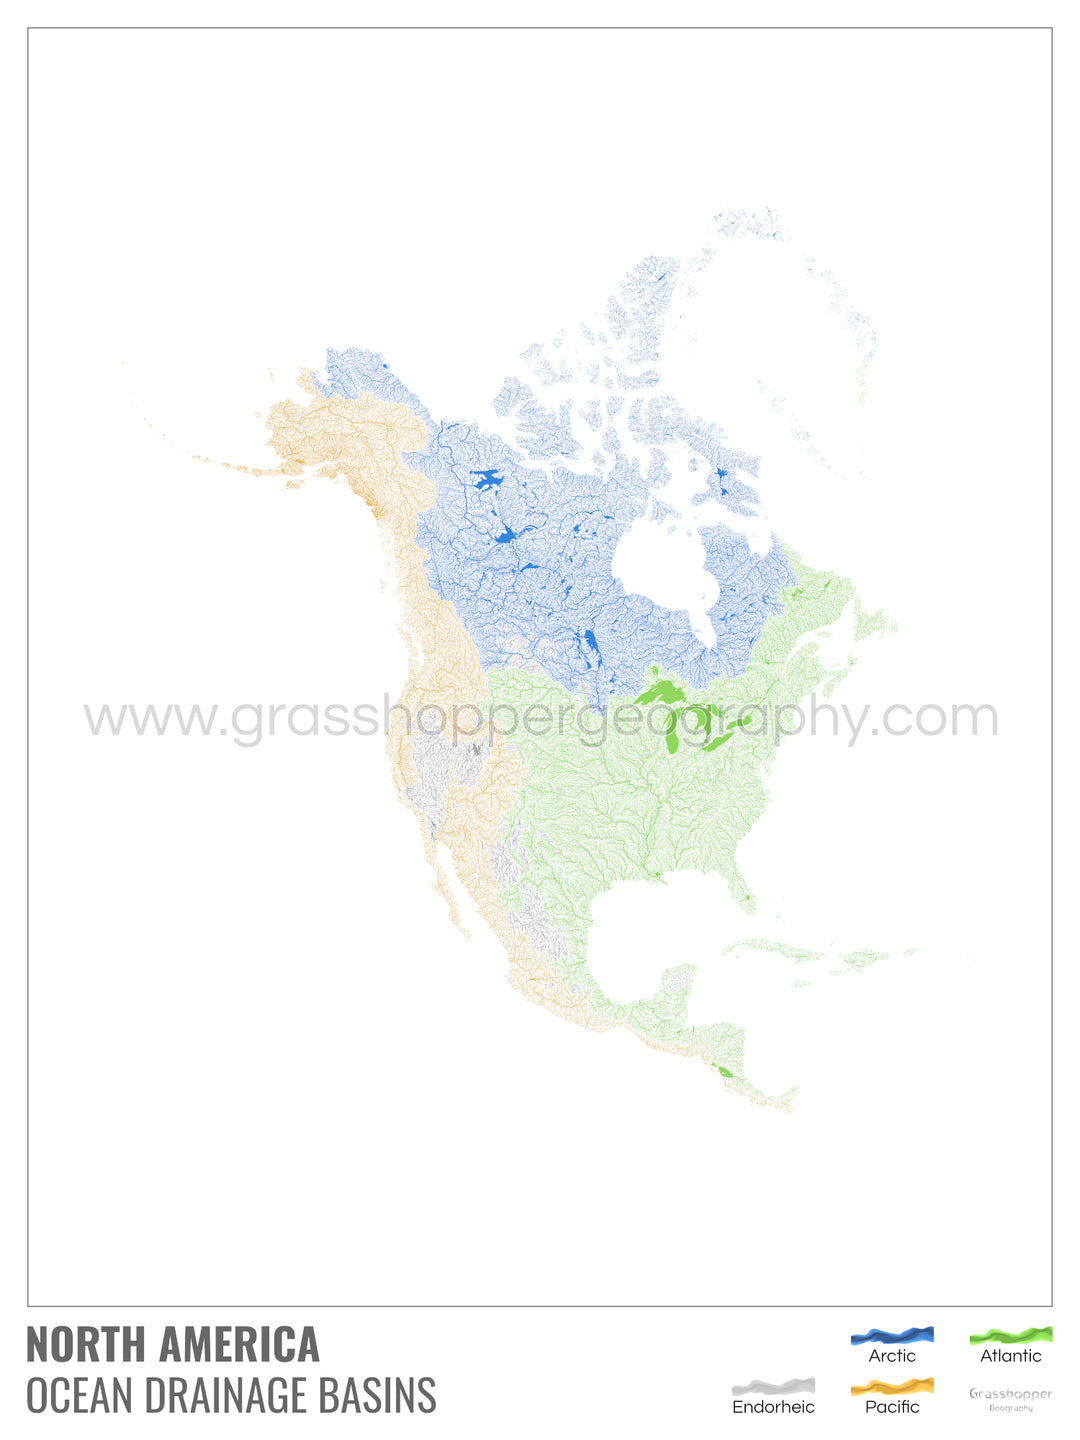 Amérique du Nord - Carte des bassins versants océaniques, blanche avec légende v1 - Impression encadrée